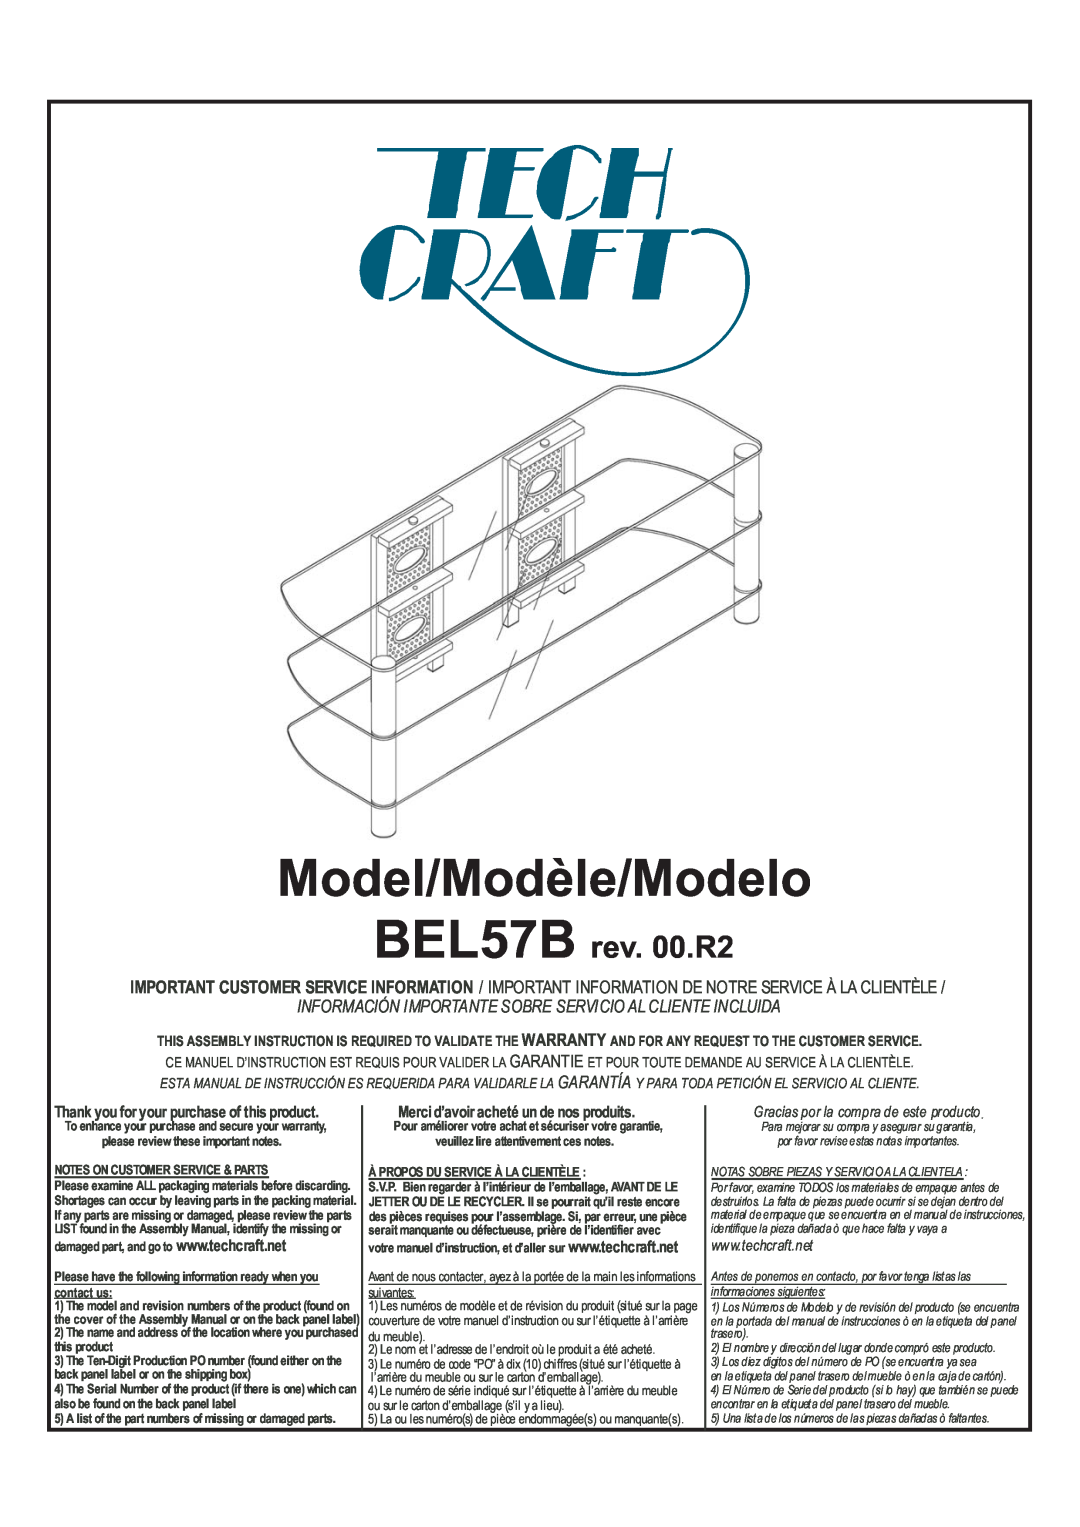 Tech Craft manual Model/Modèle/Modelo, BEL57B rev. 00.R2, Información Importante Sobre Servicio Al Cliente Incluida 